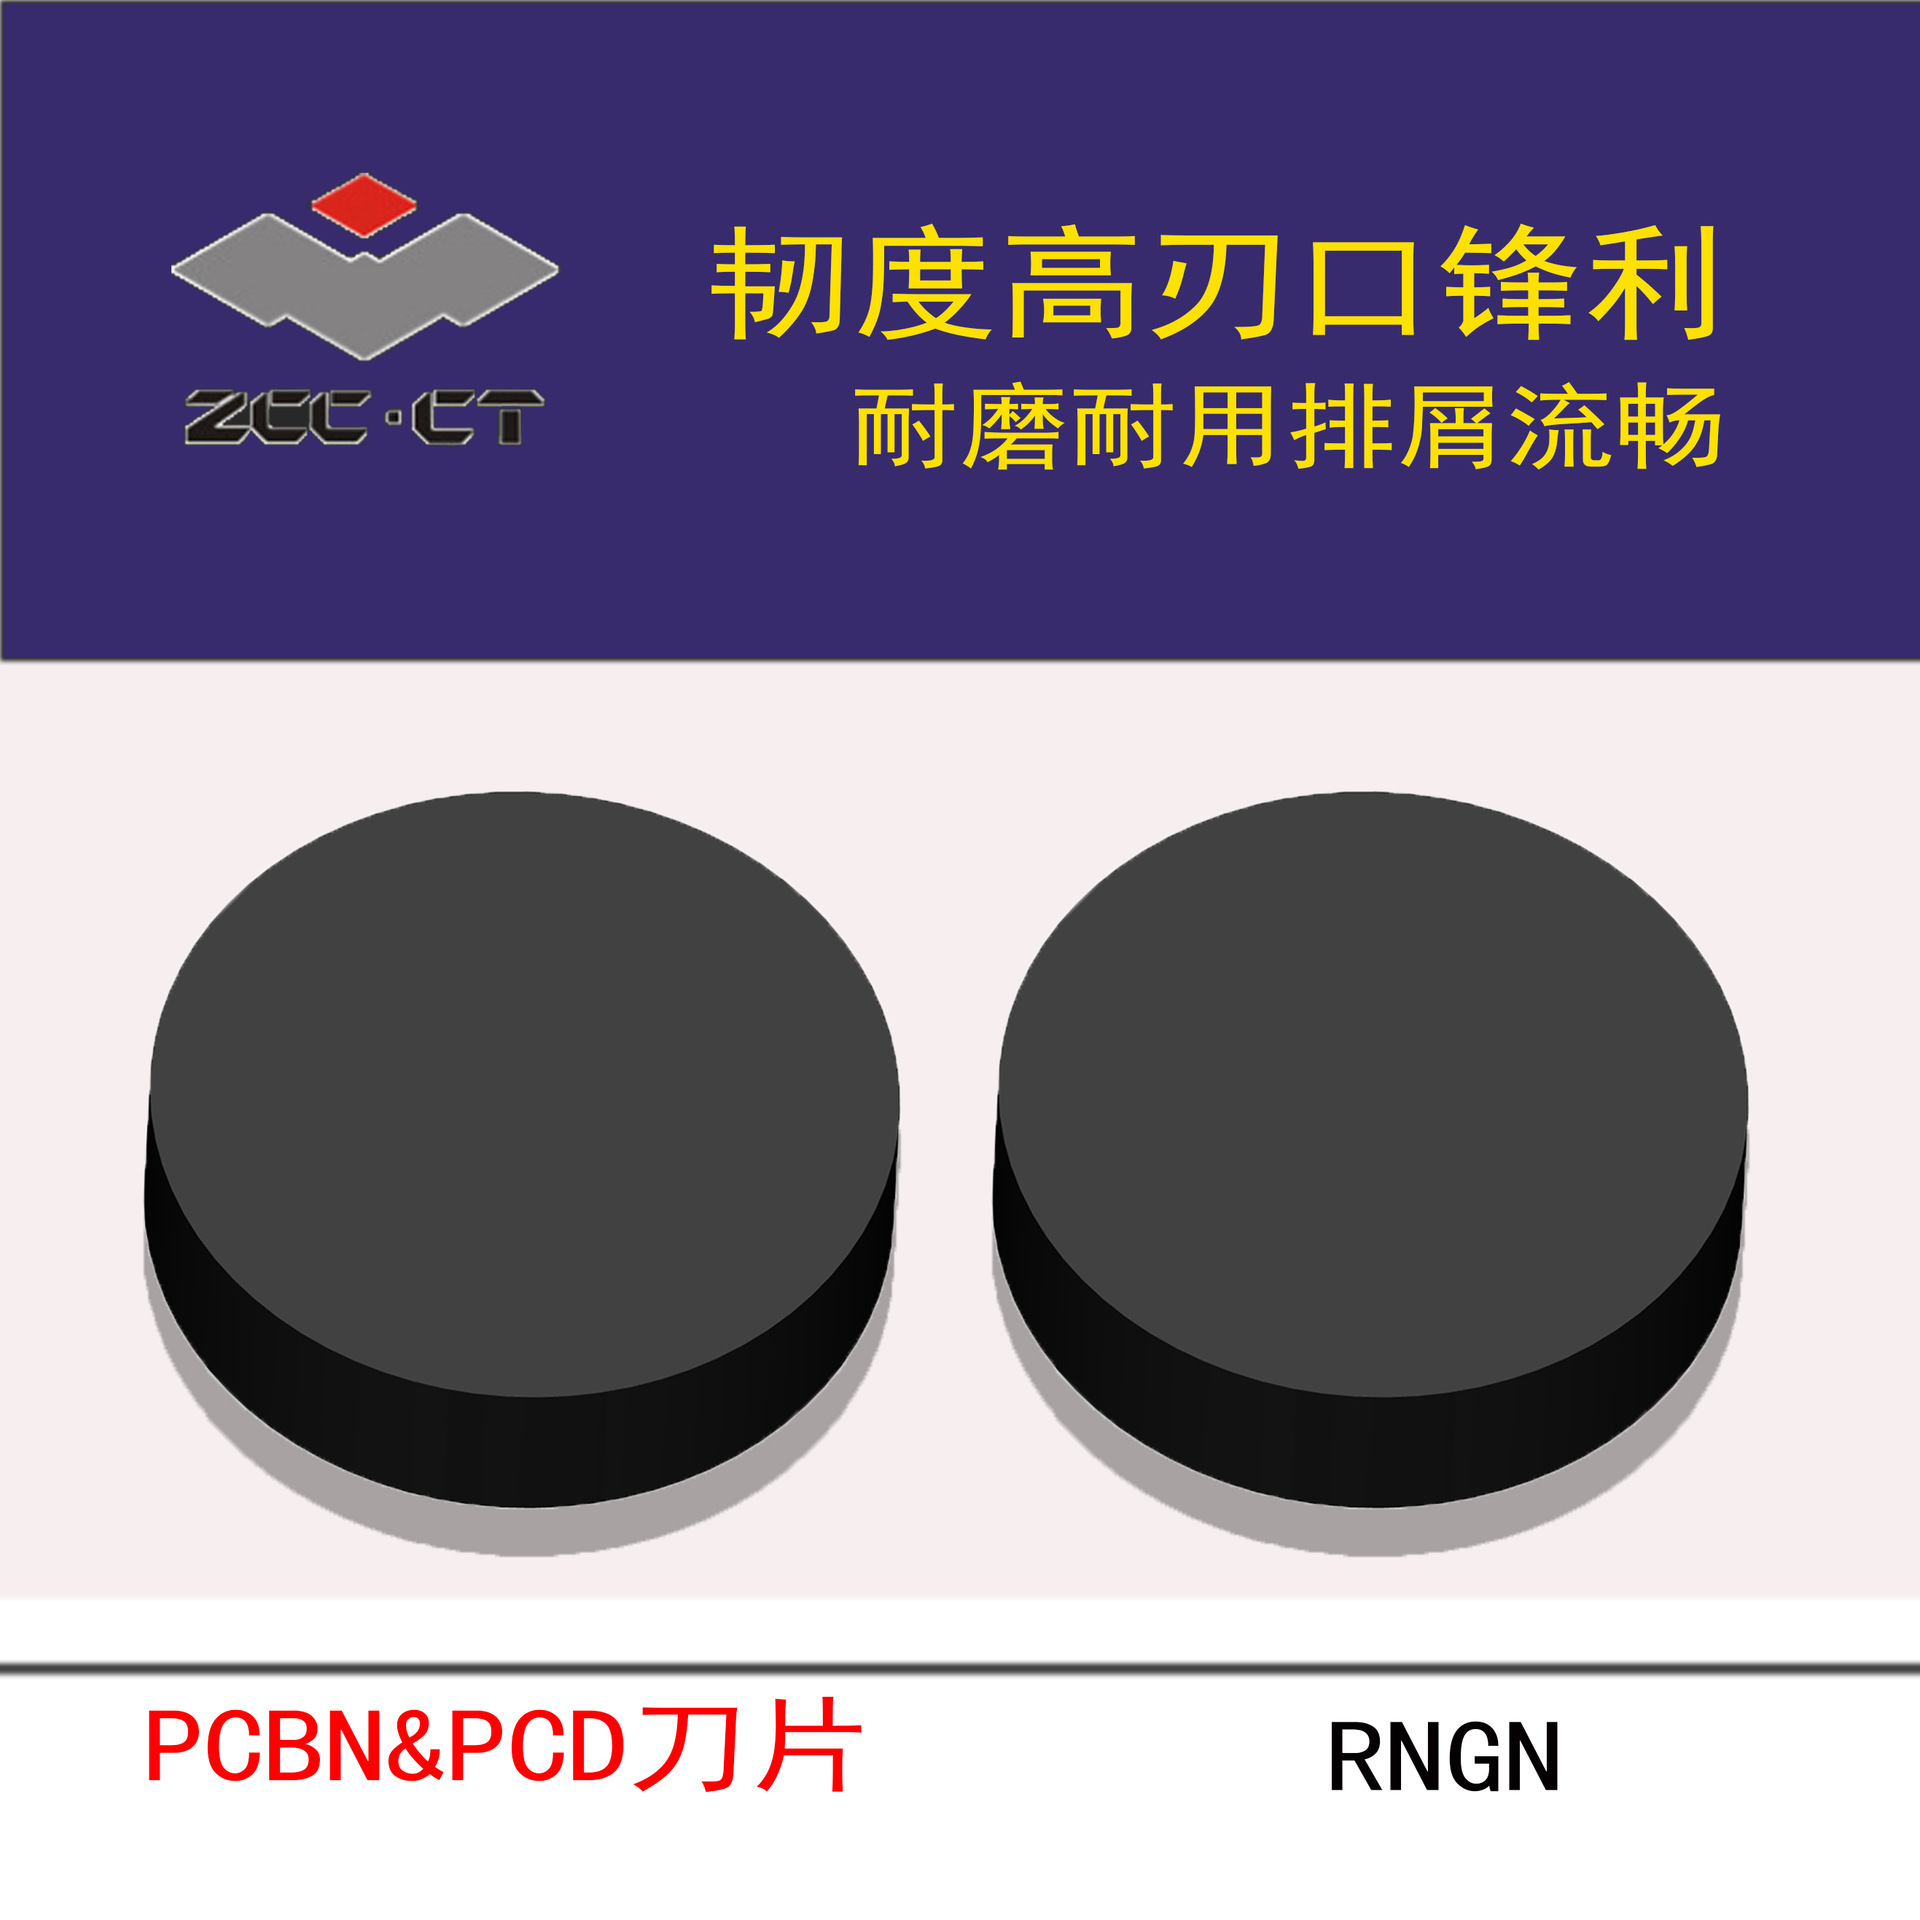 ZCCCT株洲钻石数控刀片/超硬刀片PCBN&PCD刀片RNGN系列